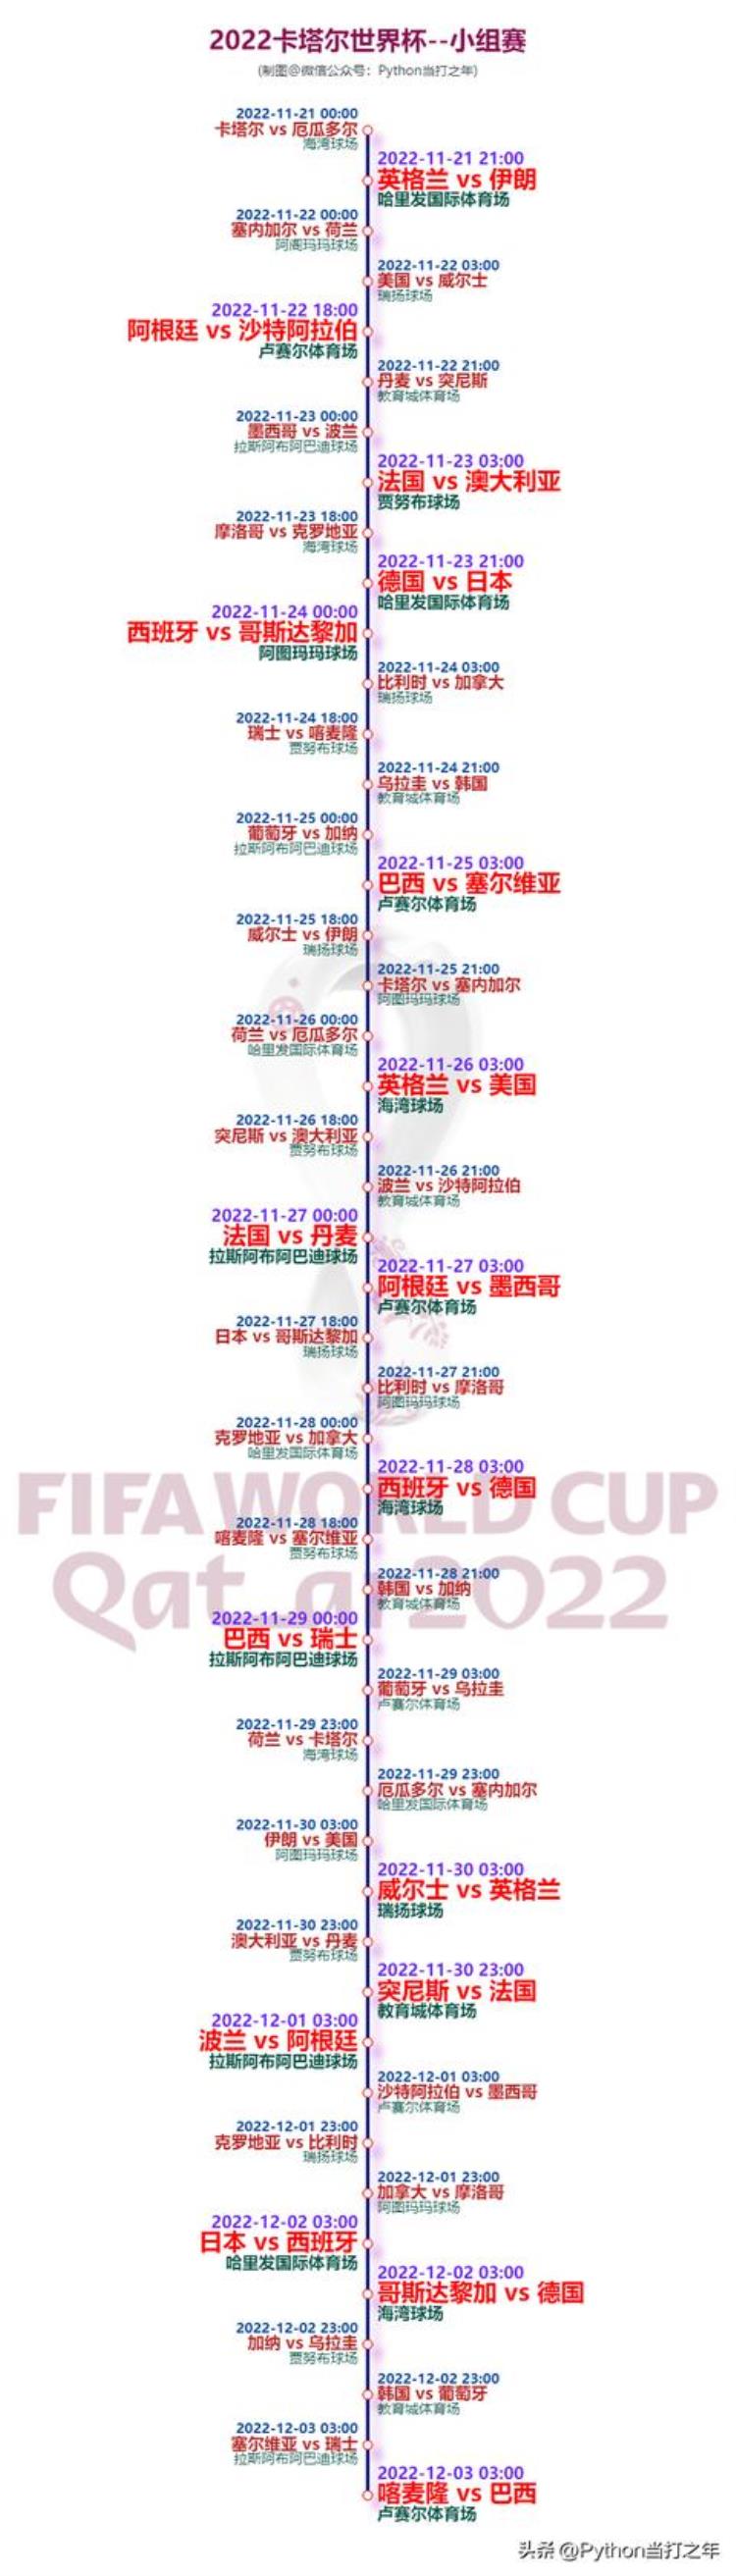 Python教你绘制卡塔尔世界杯赛事时间线图